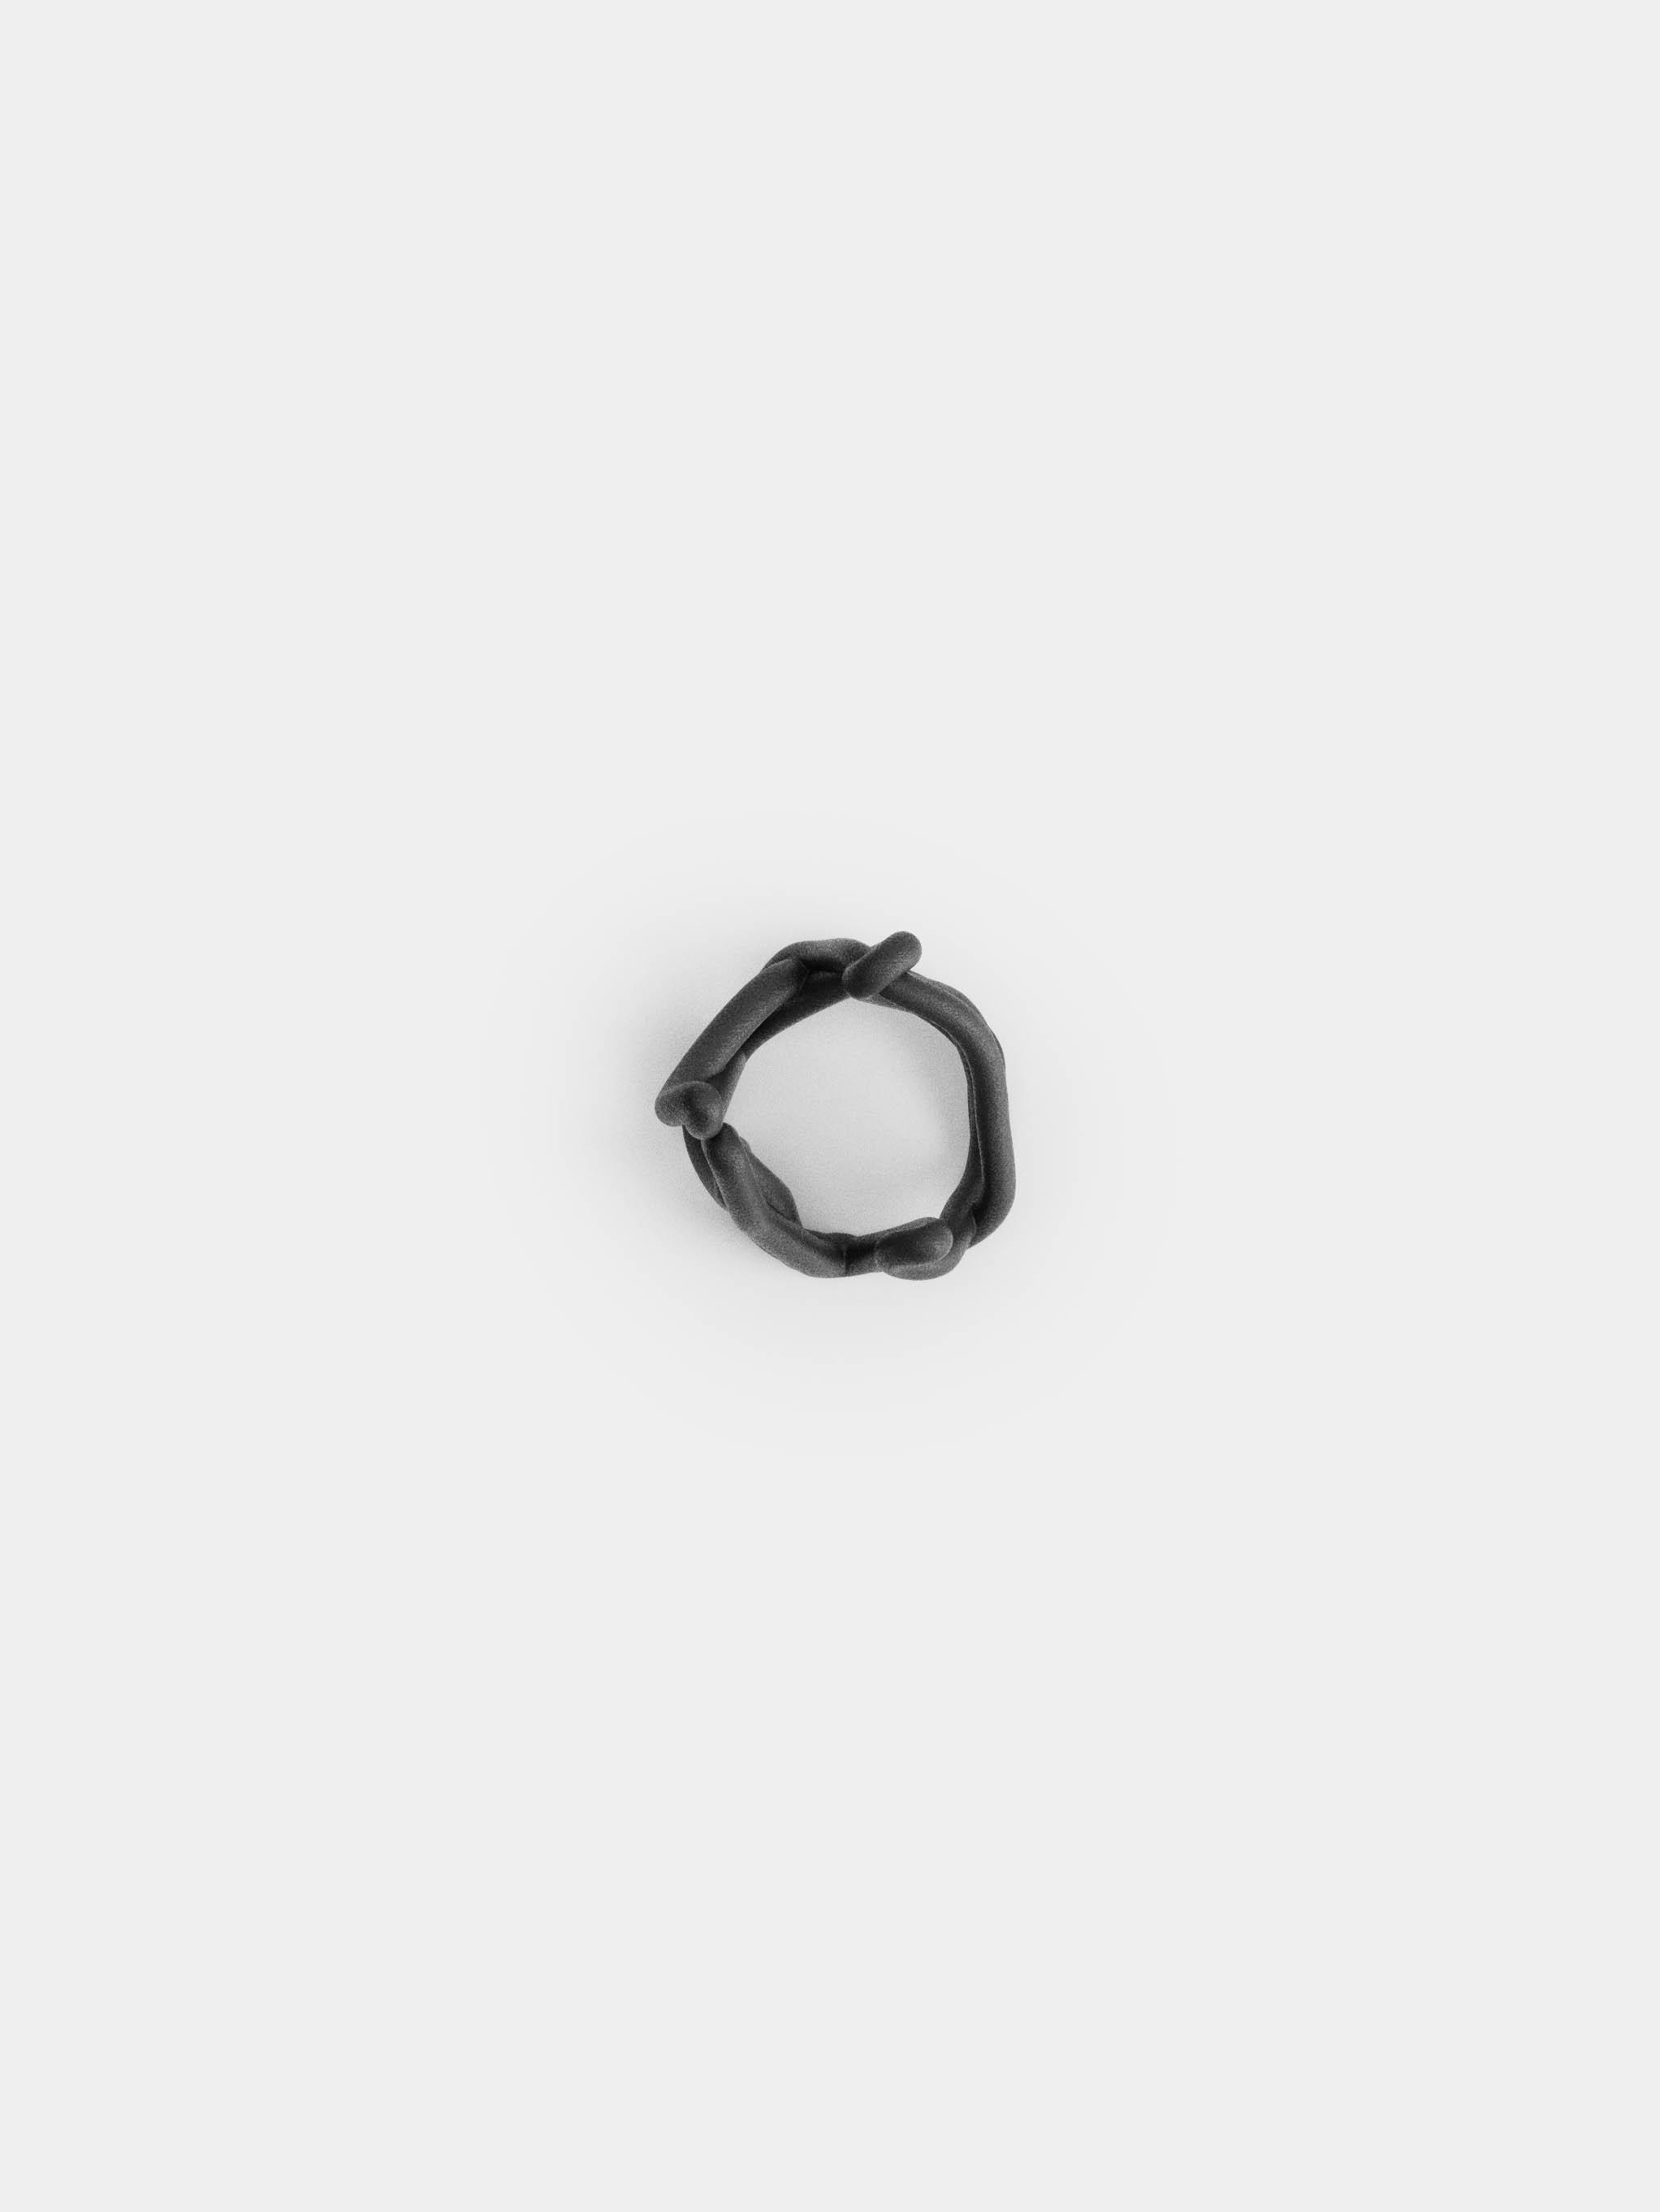 Tangled Ring 3d model